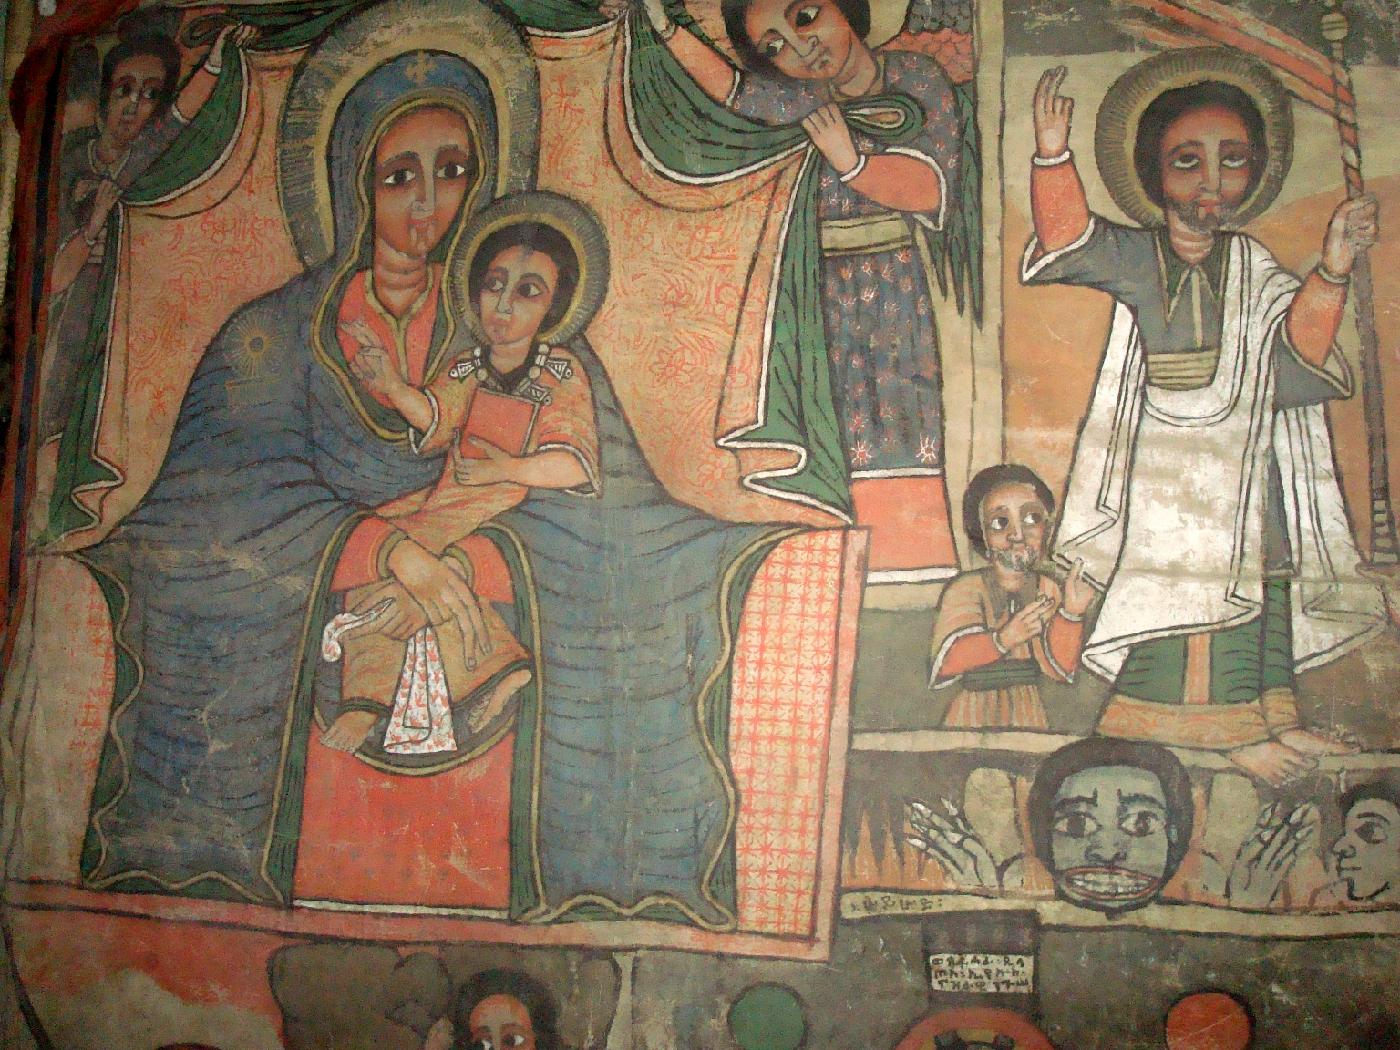 DSC035880.jpg - Vierge  lEnfant et saint bnissant avec deux doigts, dans le style byzantin